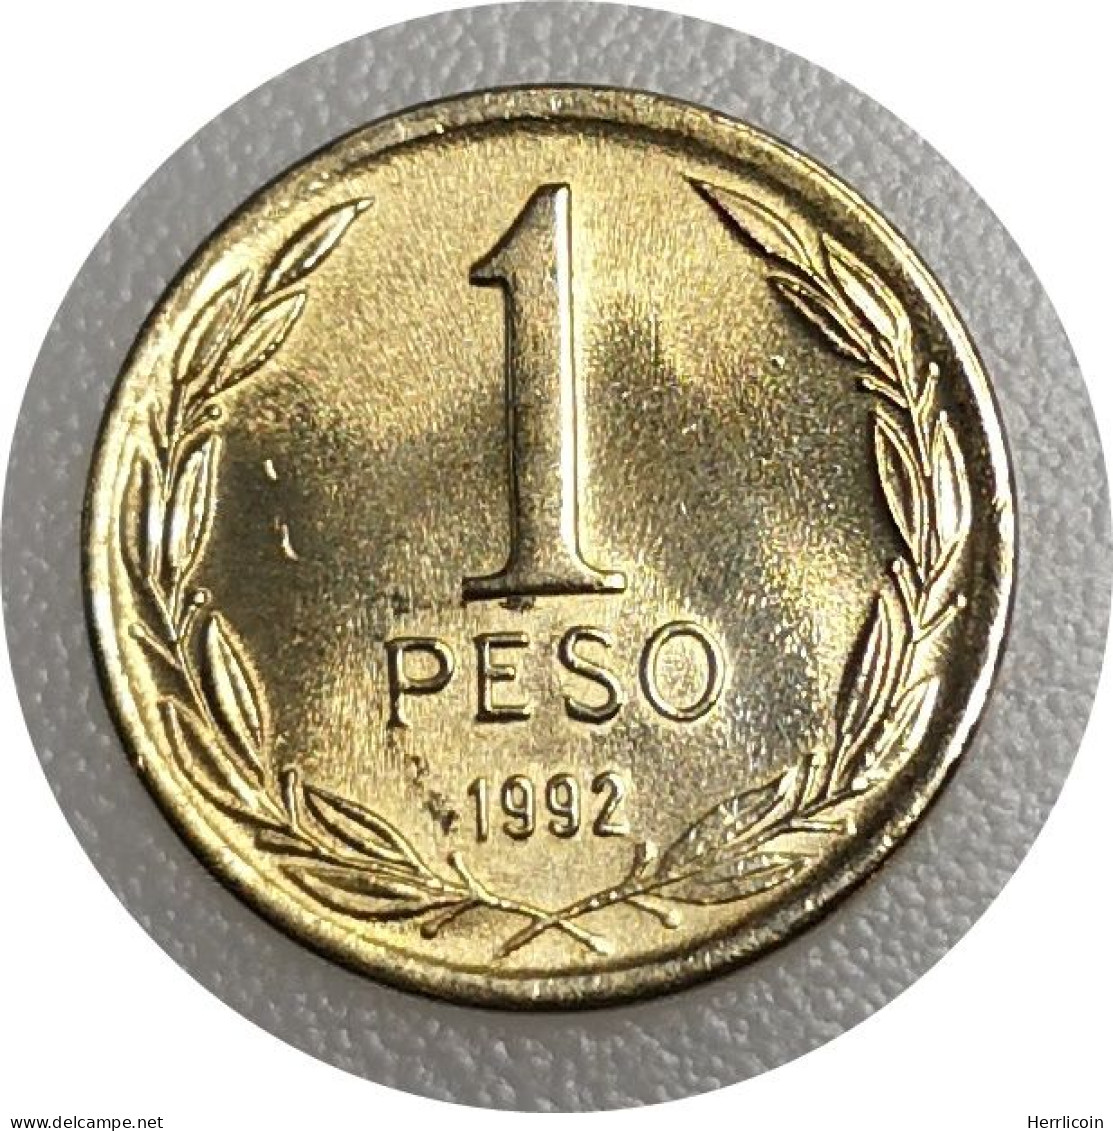 Monnaie Chili - 1992 - 1 Peso - Chile